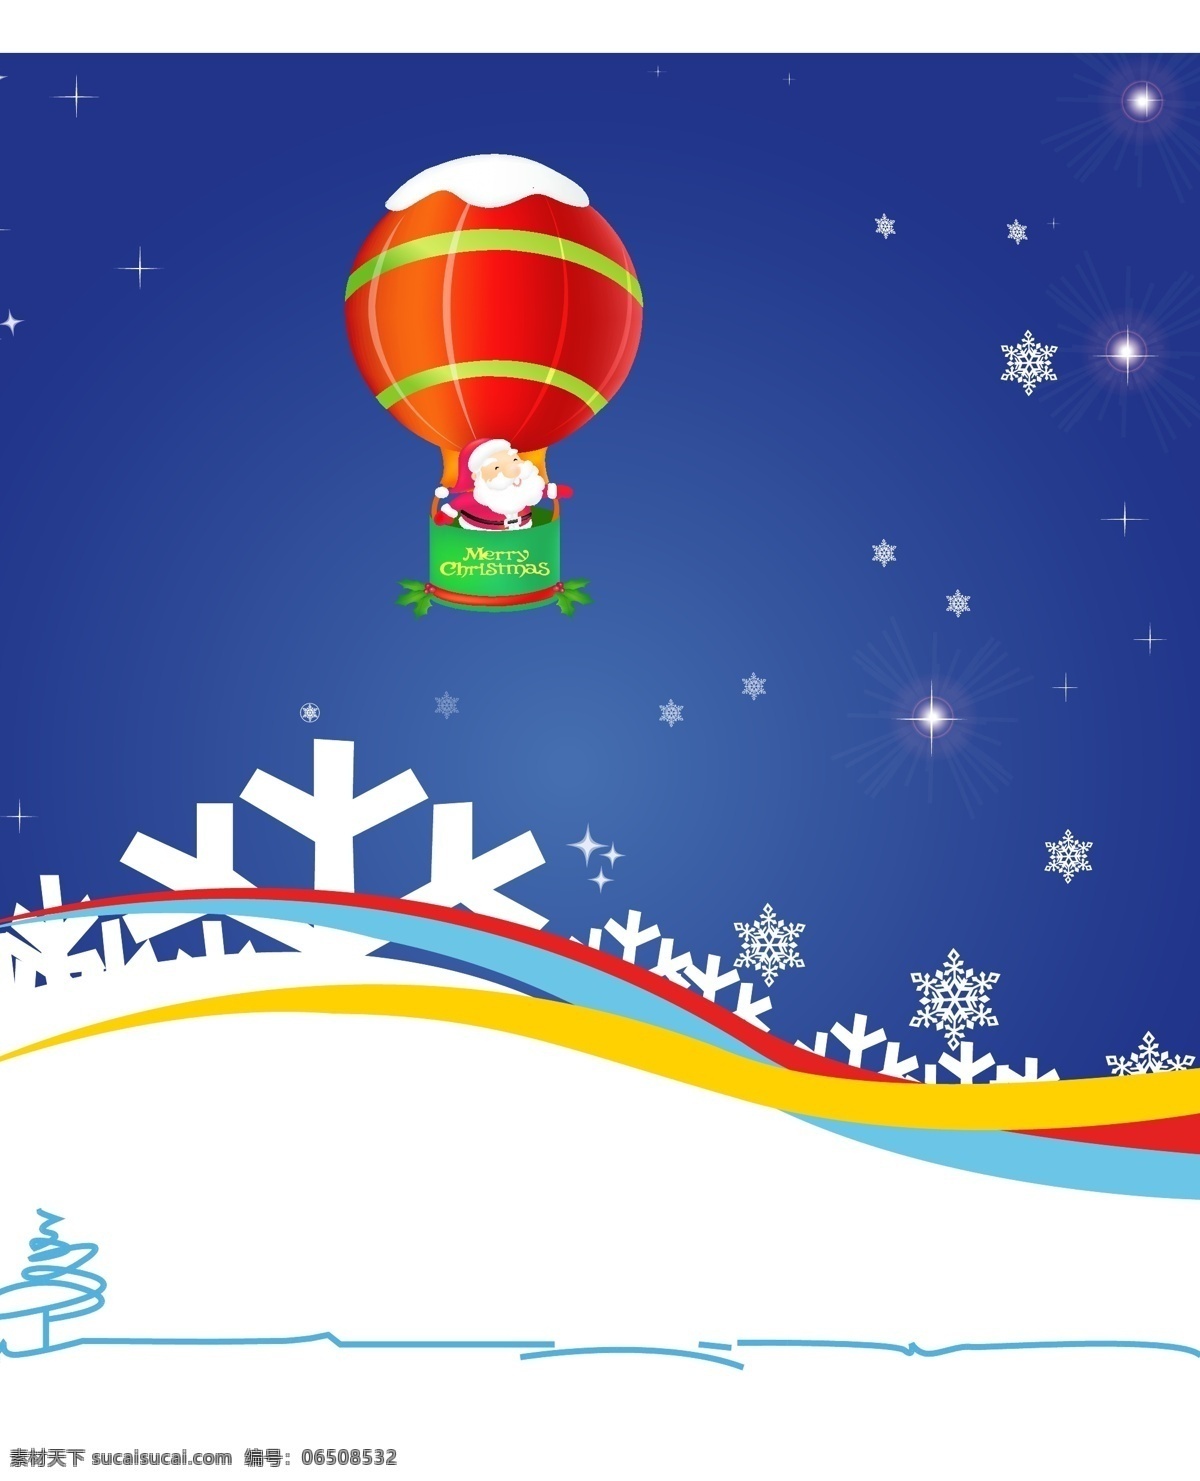 圣诞节元素 christmas merry 背景 插画 动感 模板 热气球 设计稿 圣诞节 圣诞老人 雪花 图案 线条 星光 节日大全 源文件 节日素材